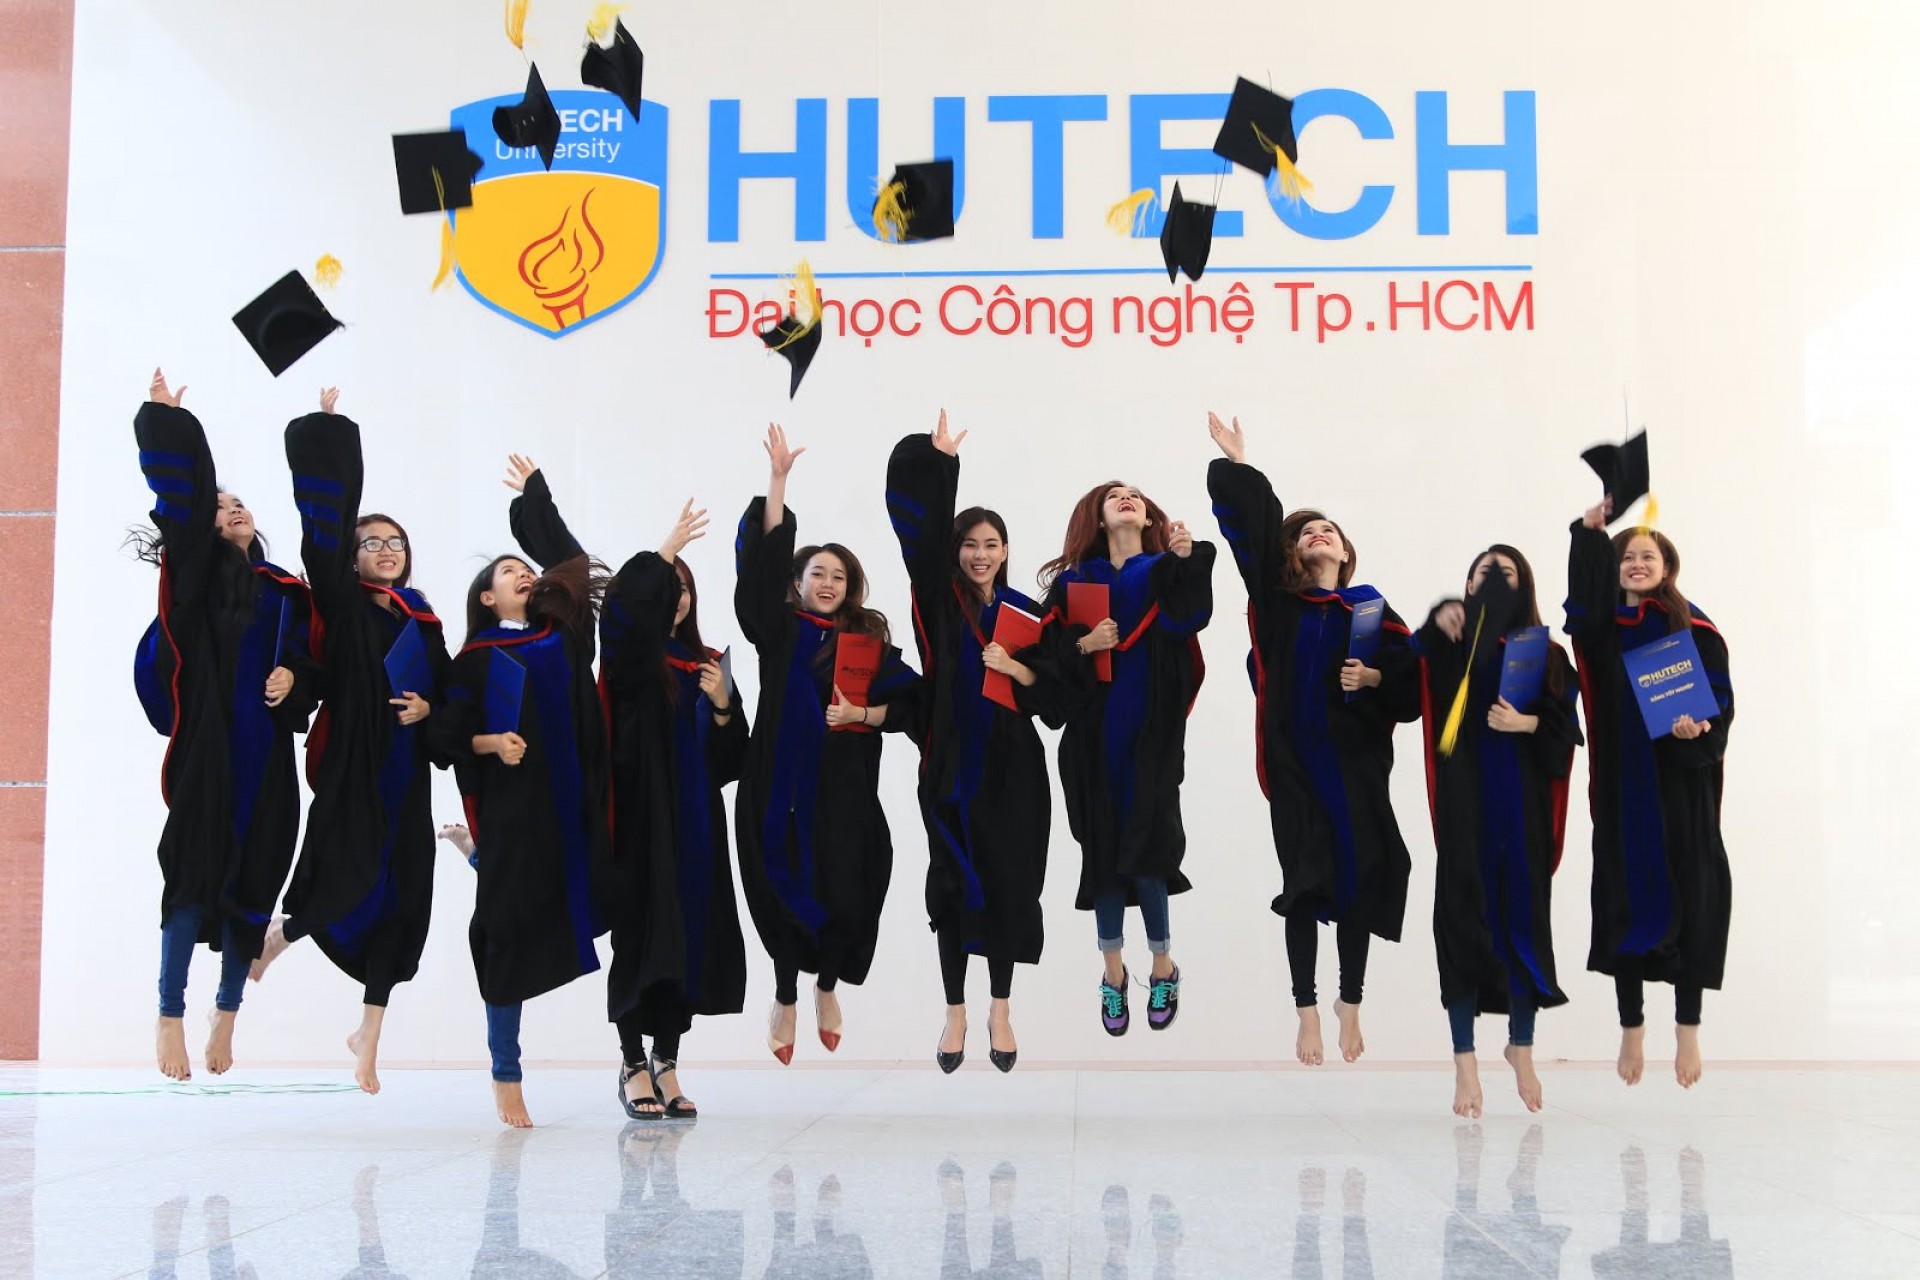 Sinh viên đánh giá gì về Đại học Công nghệ TP HCM – HUTECH?